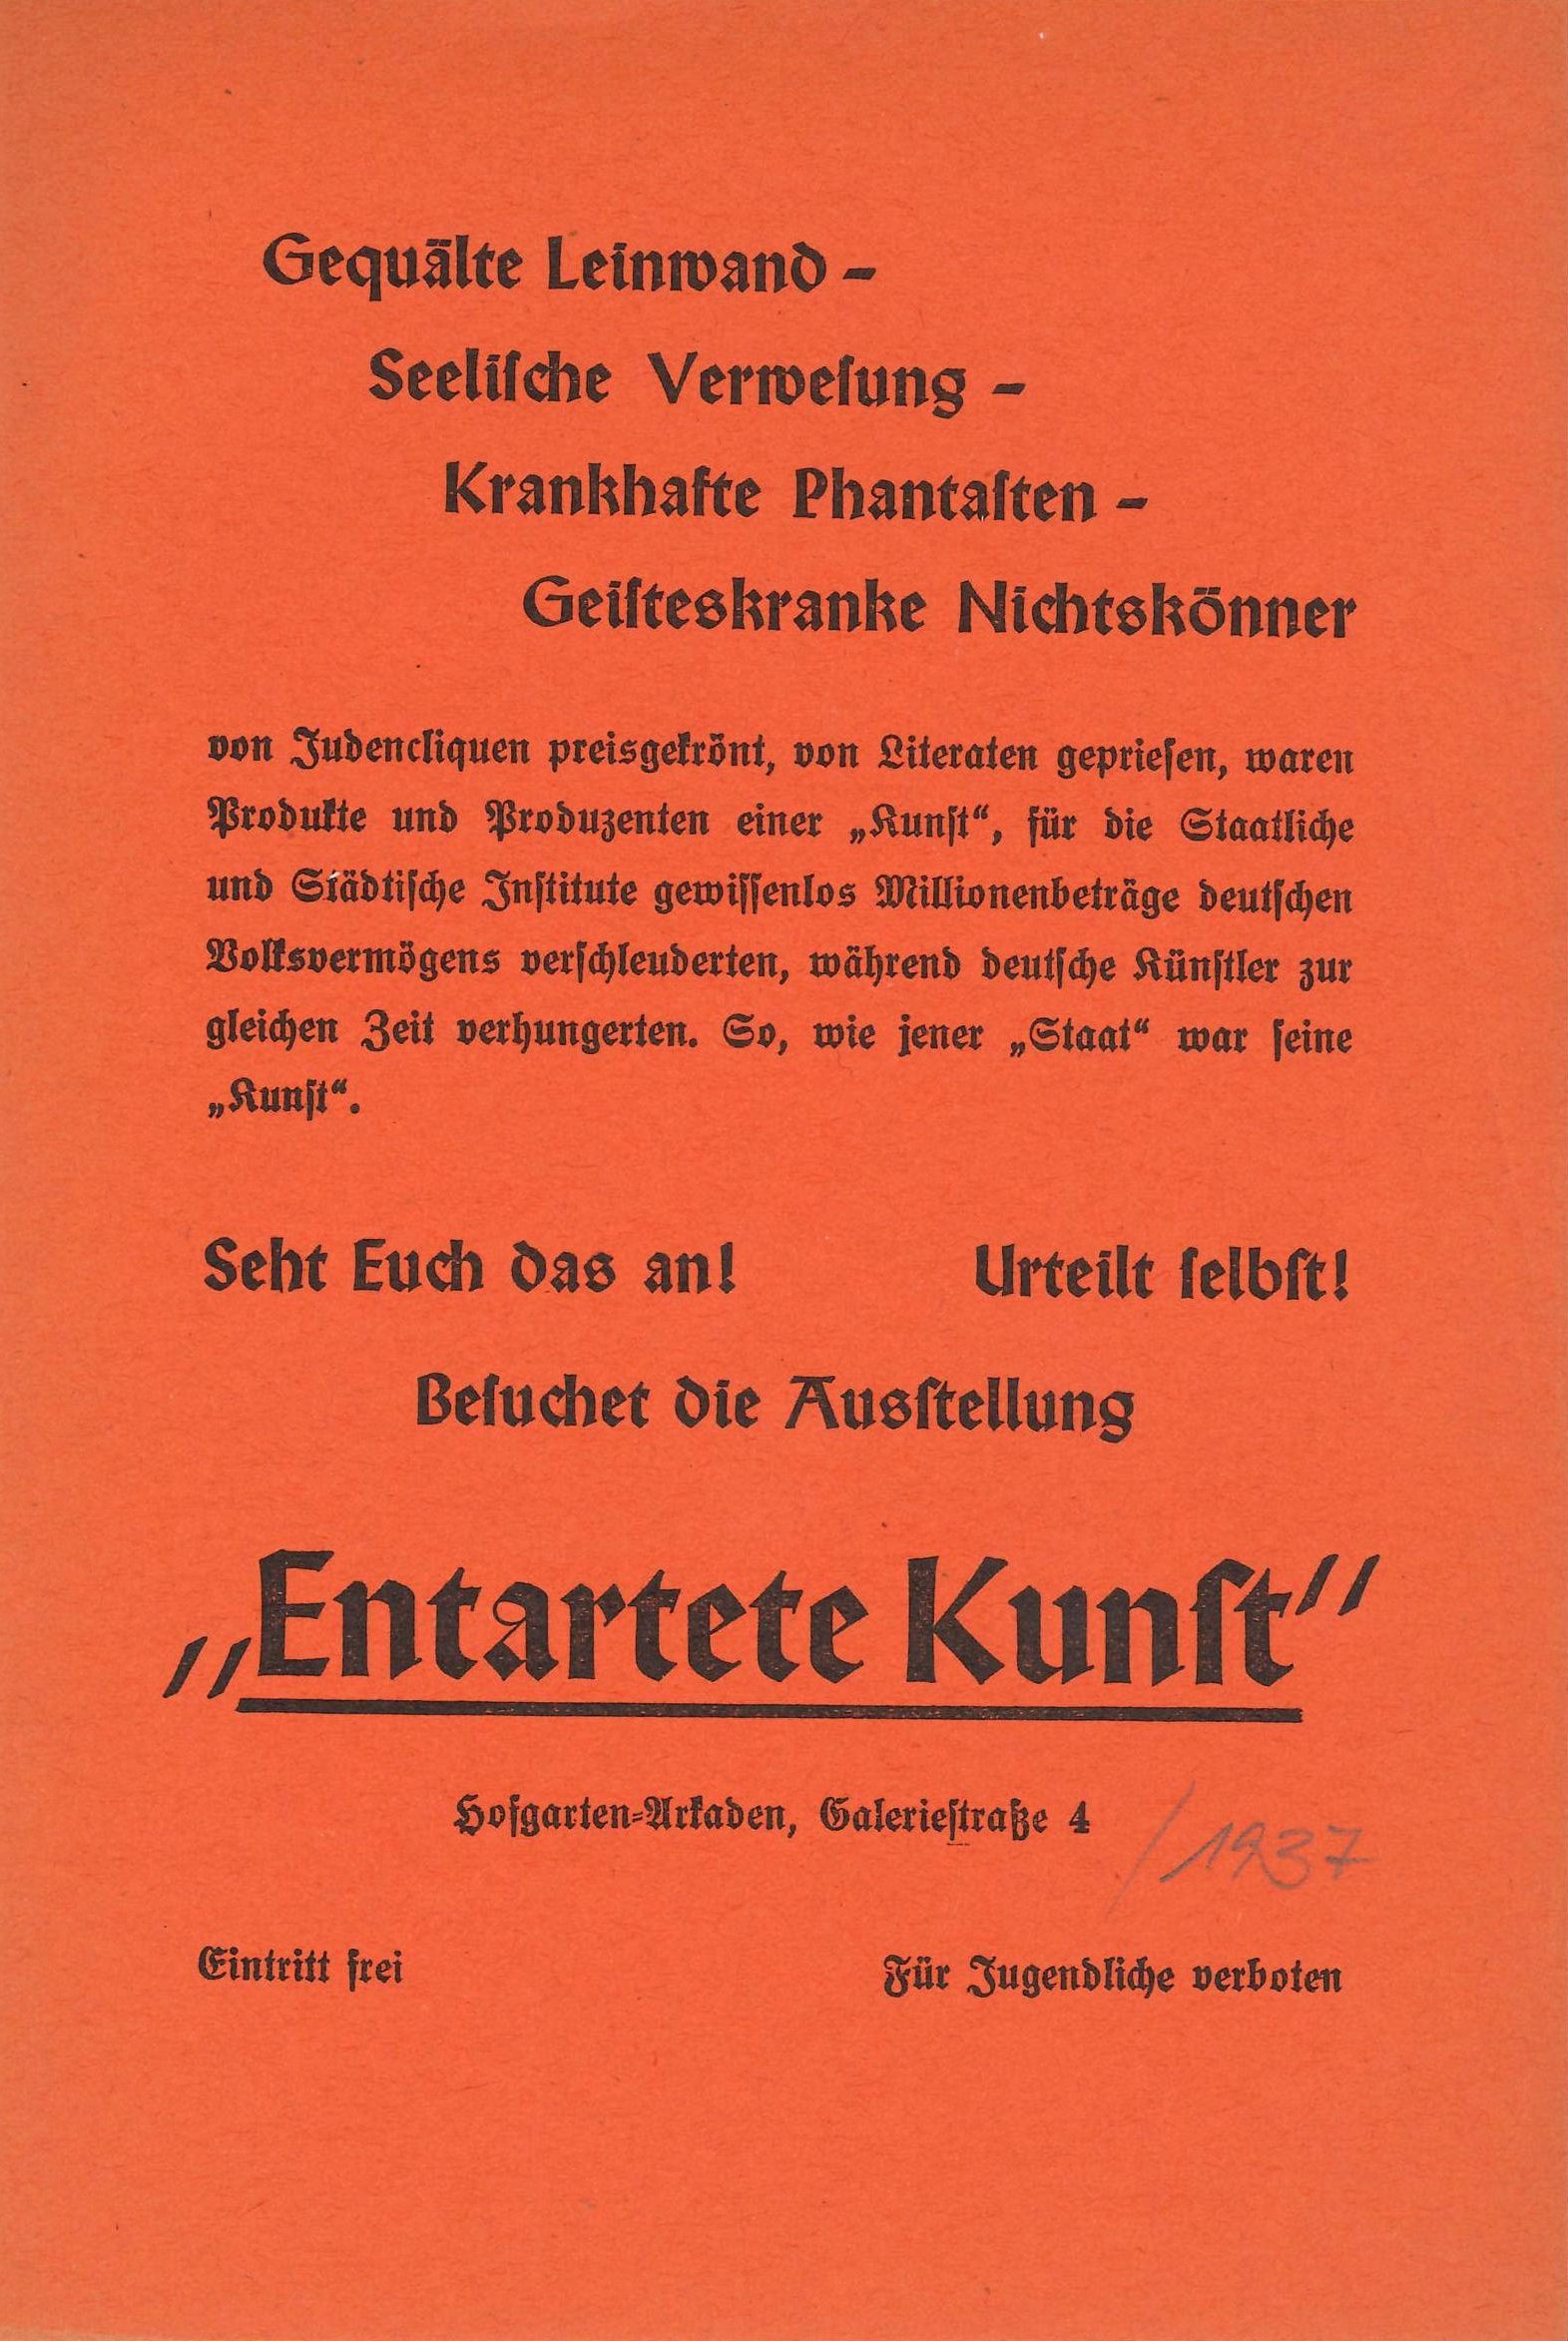 "Entartete Kunst", Invitation, 1937 (Announcement); Archiv der Avantgarden, Staatliche Kunstsammlungen Dresden